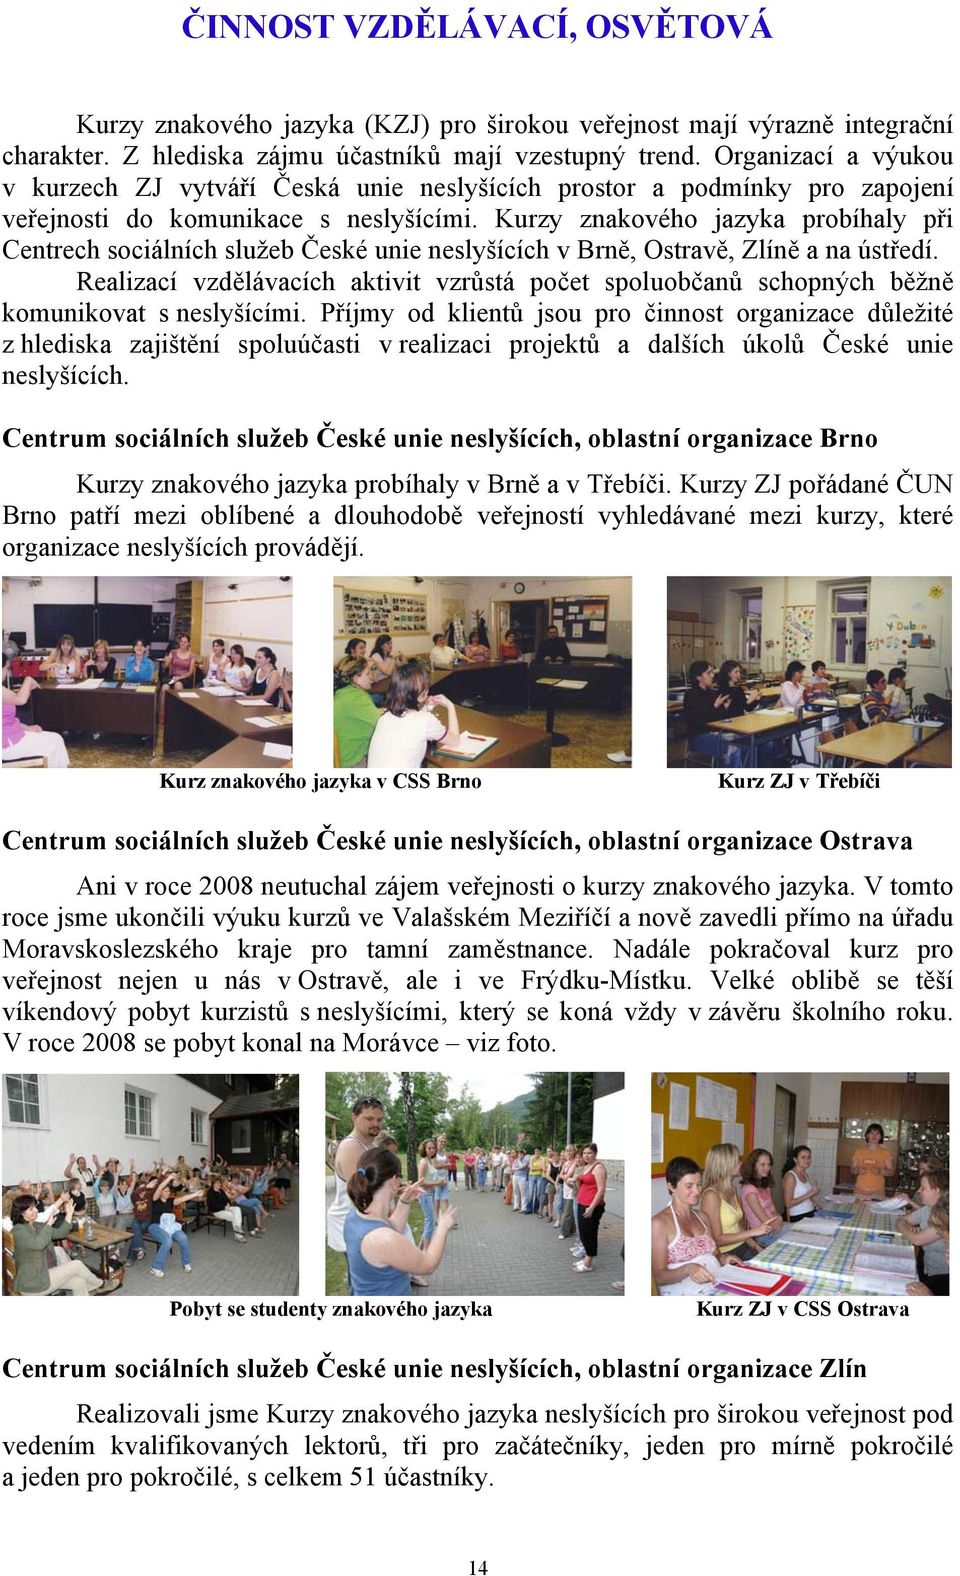 Kurzy znakového jazyka probíhaly při Centrech sociálních služeb České unie neslyšících v Brně, Ostravě, Zlíně a na ústředí.